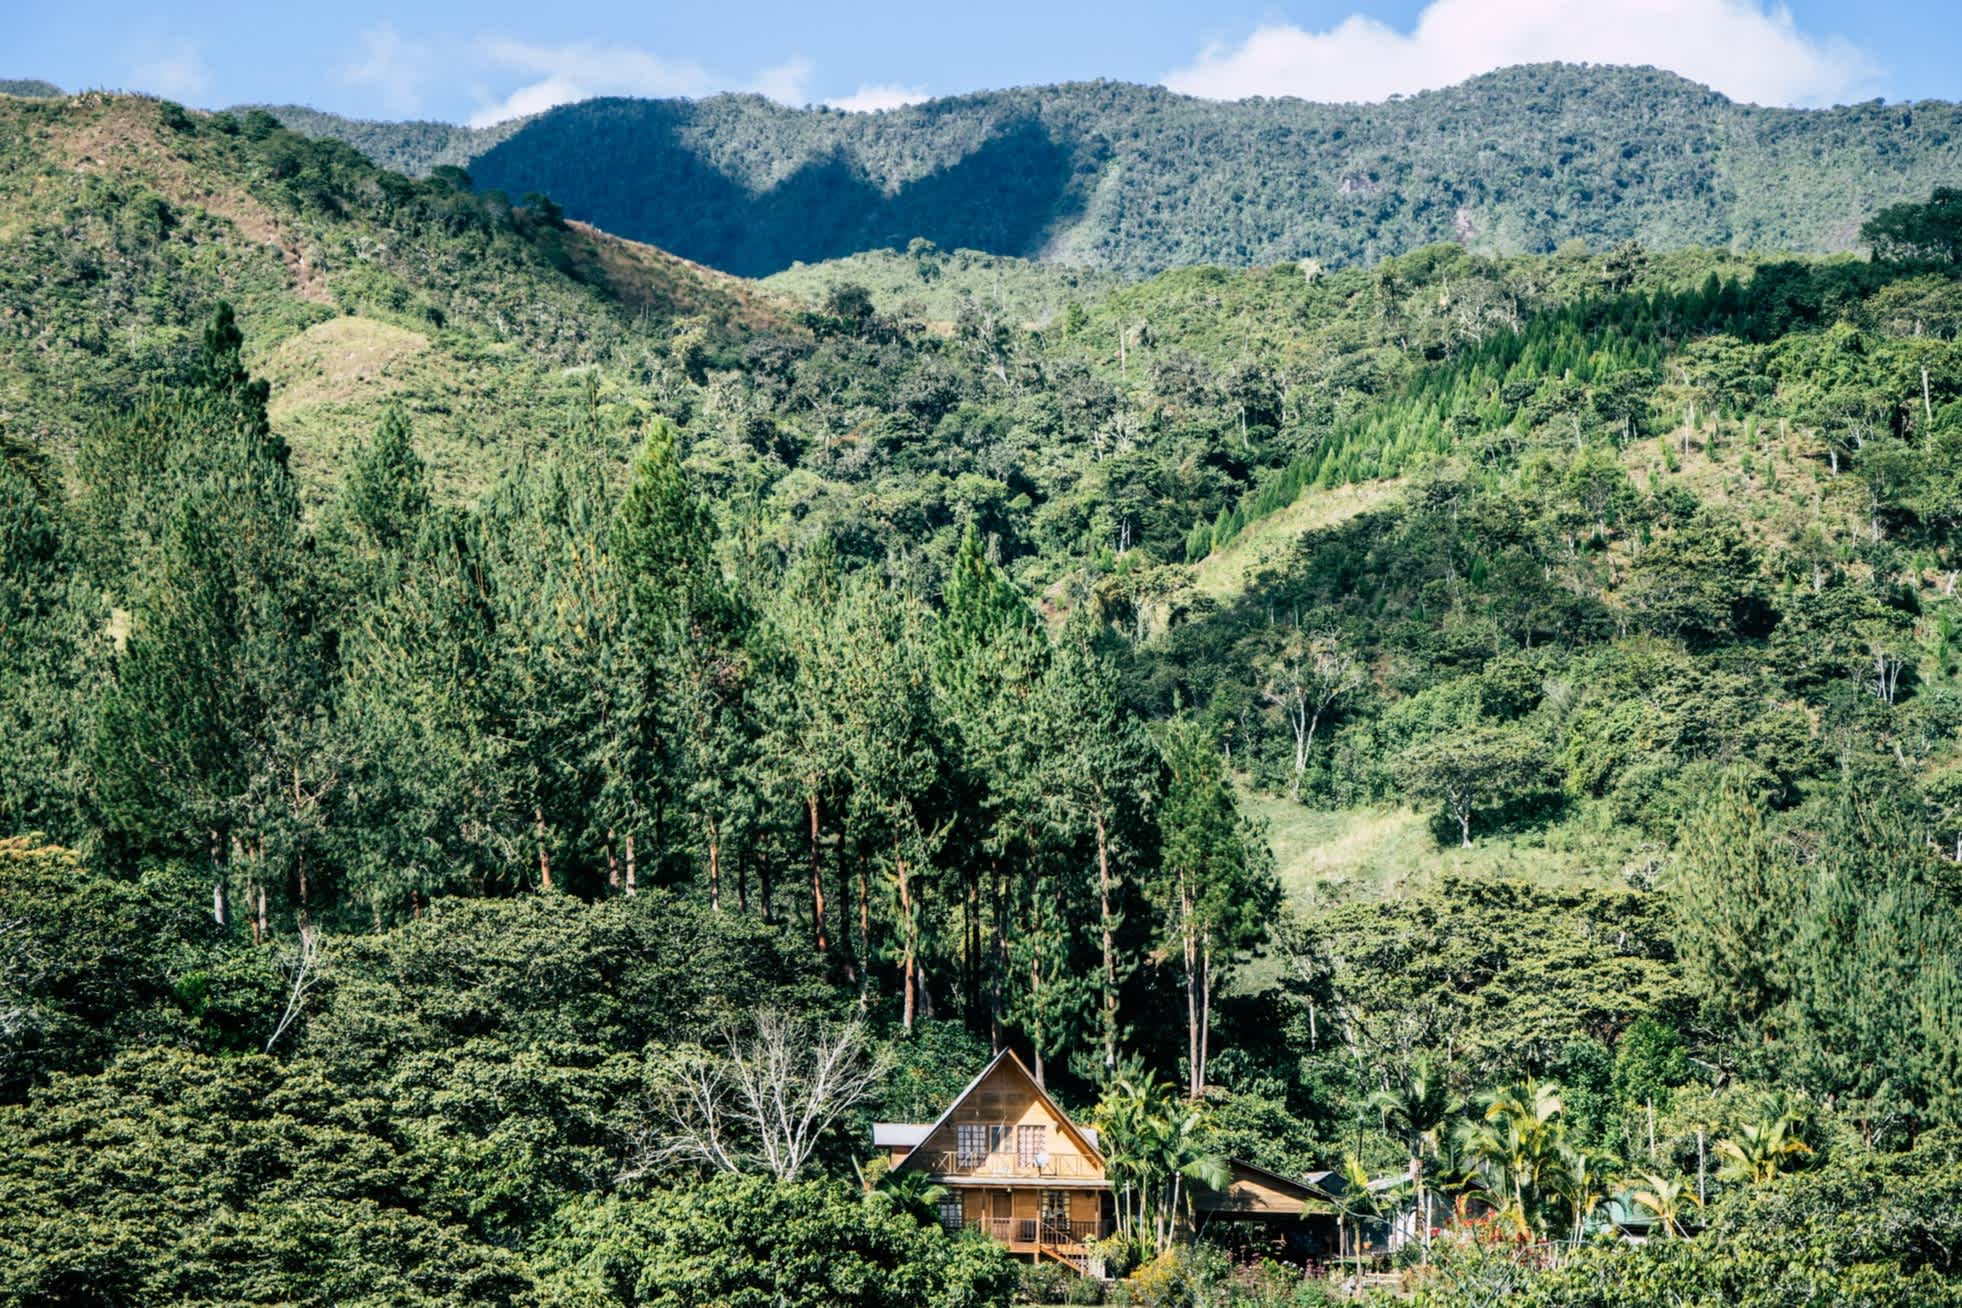 Vue d'une maison au milieu d'un paysage verdoyant de forêts et de montagnes